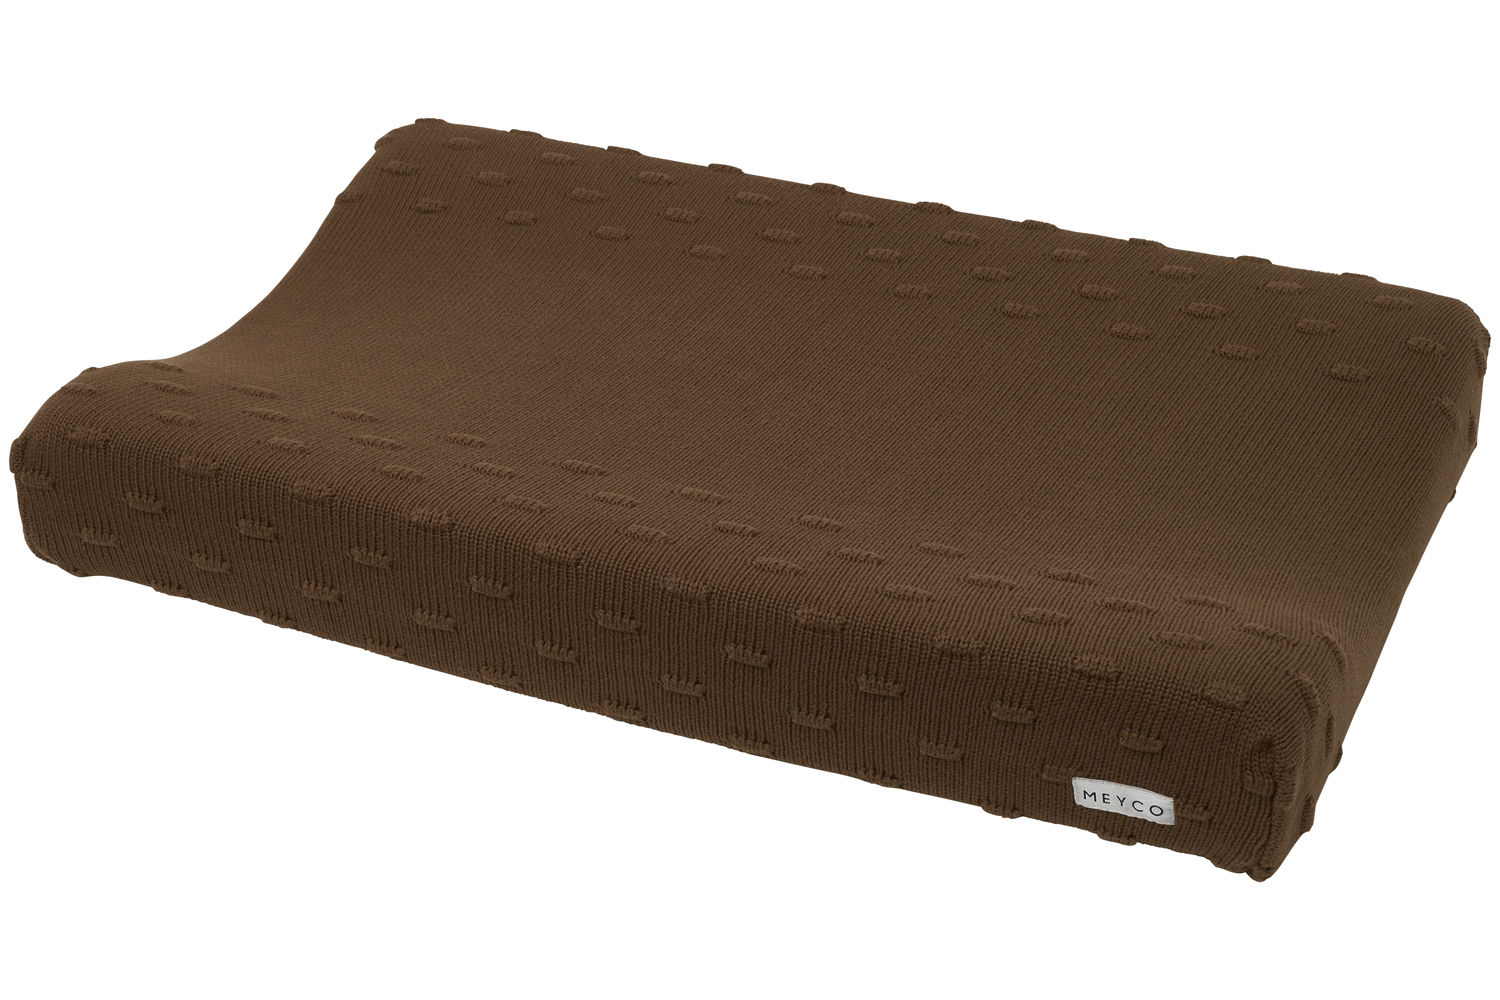 Wickelauflagenbezug Knots - chocolate - 50x70cm